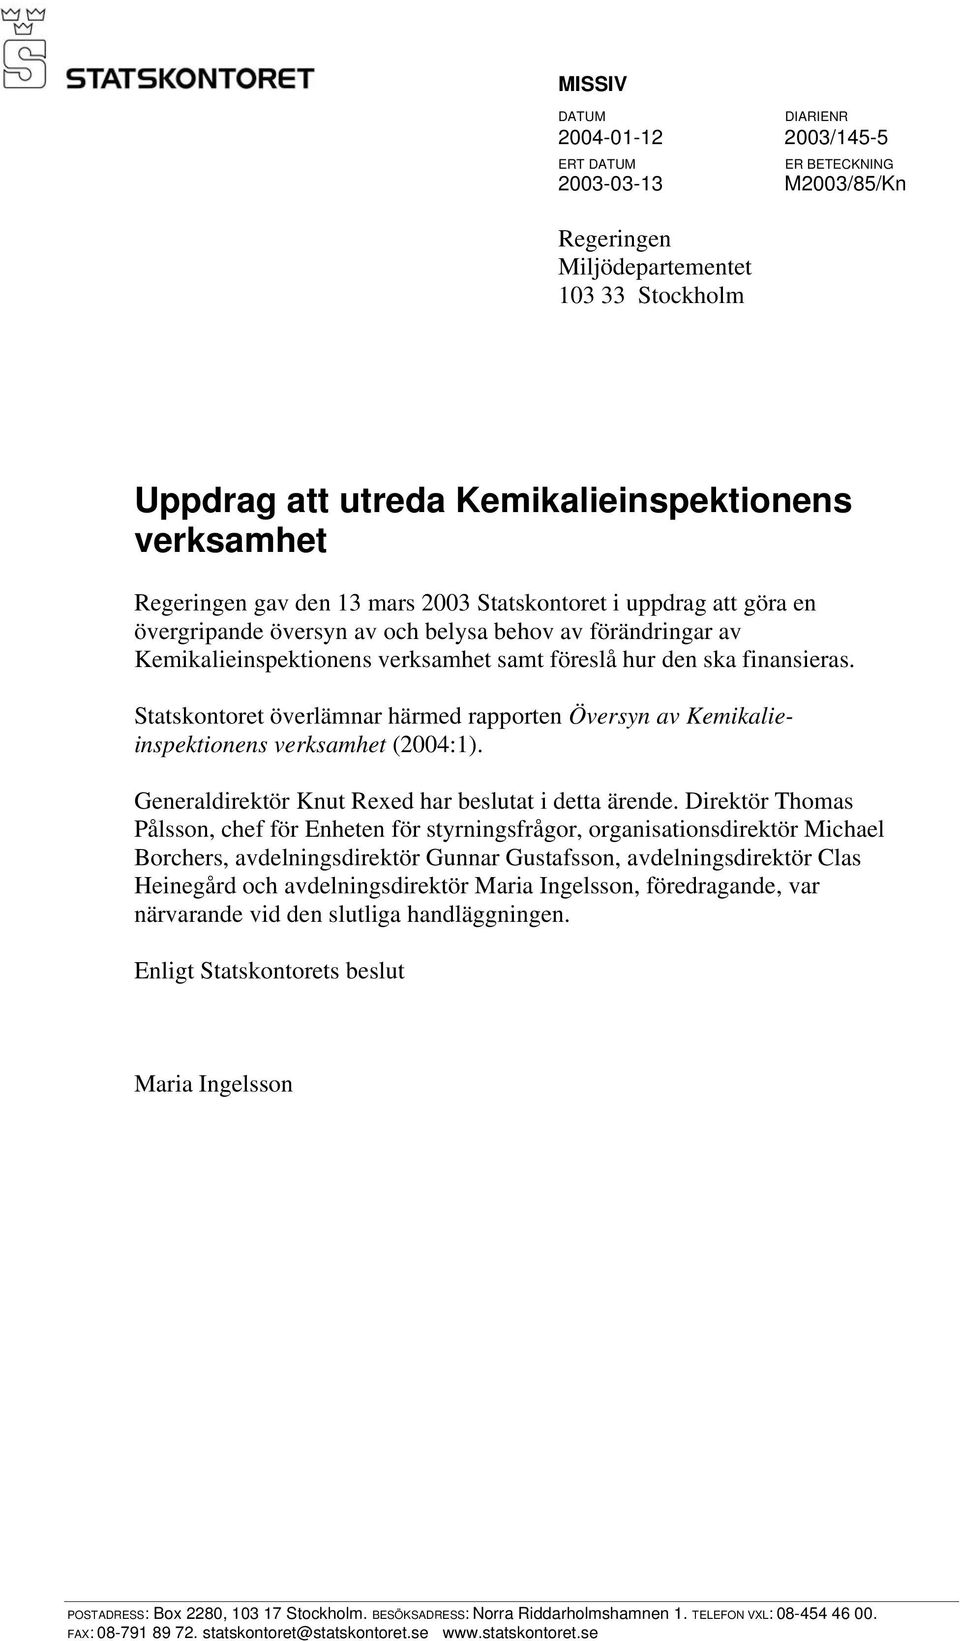 Statskontoret överlämnar härmed rapporten Översyn av Kemikalieinspektionens verksamhet (2004:1). Generaldirektör Knut Rexed har beslutat i detta ärende.